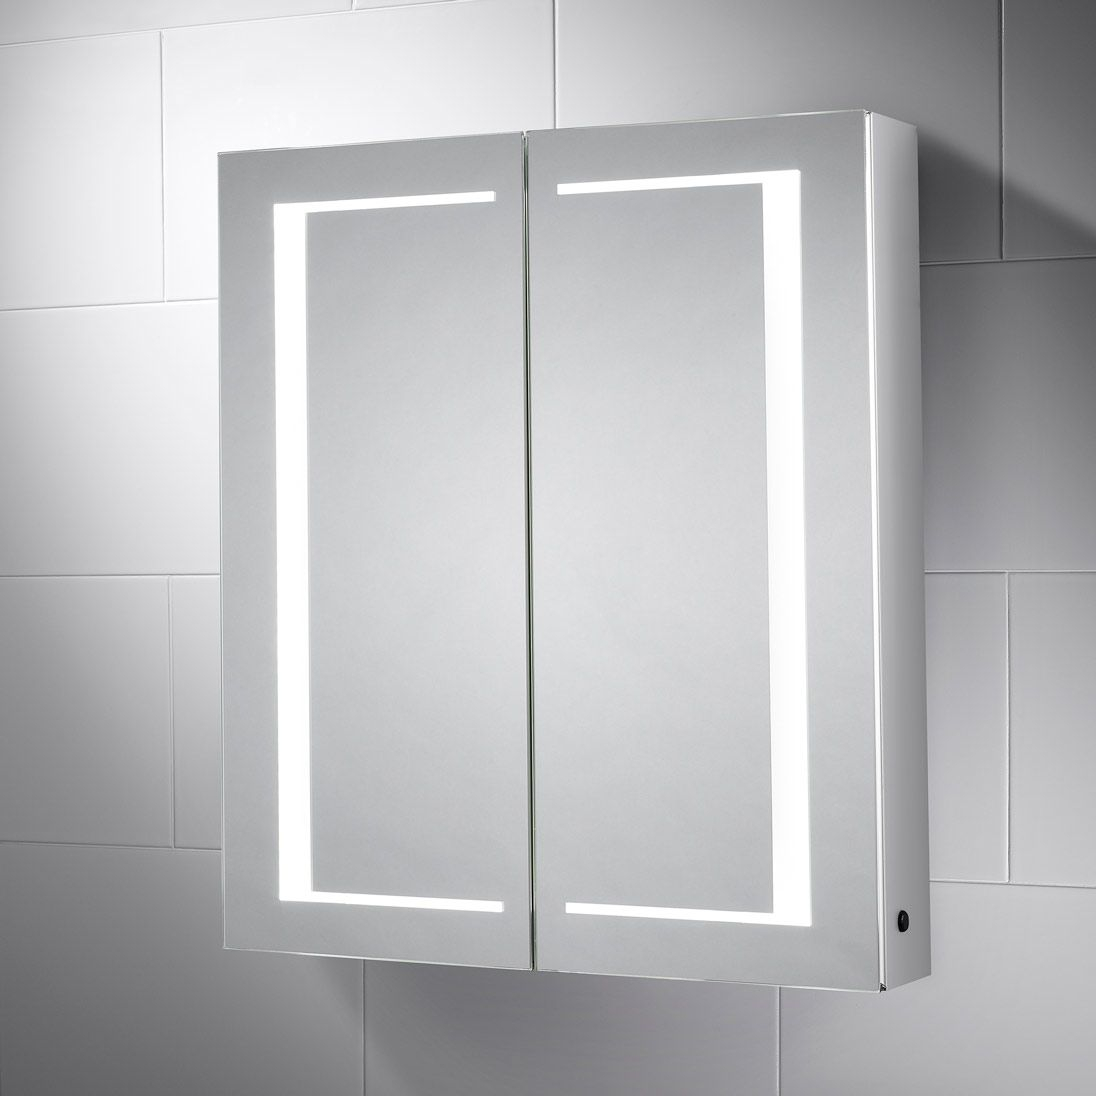 Nimbus Led Illuminated Double Sided Bathroom Cabinet Mirror Pebble within size 1096 X 1096